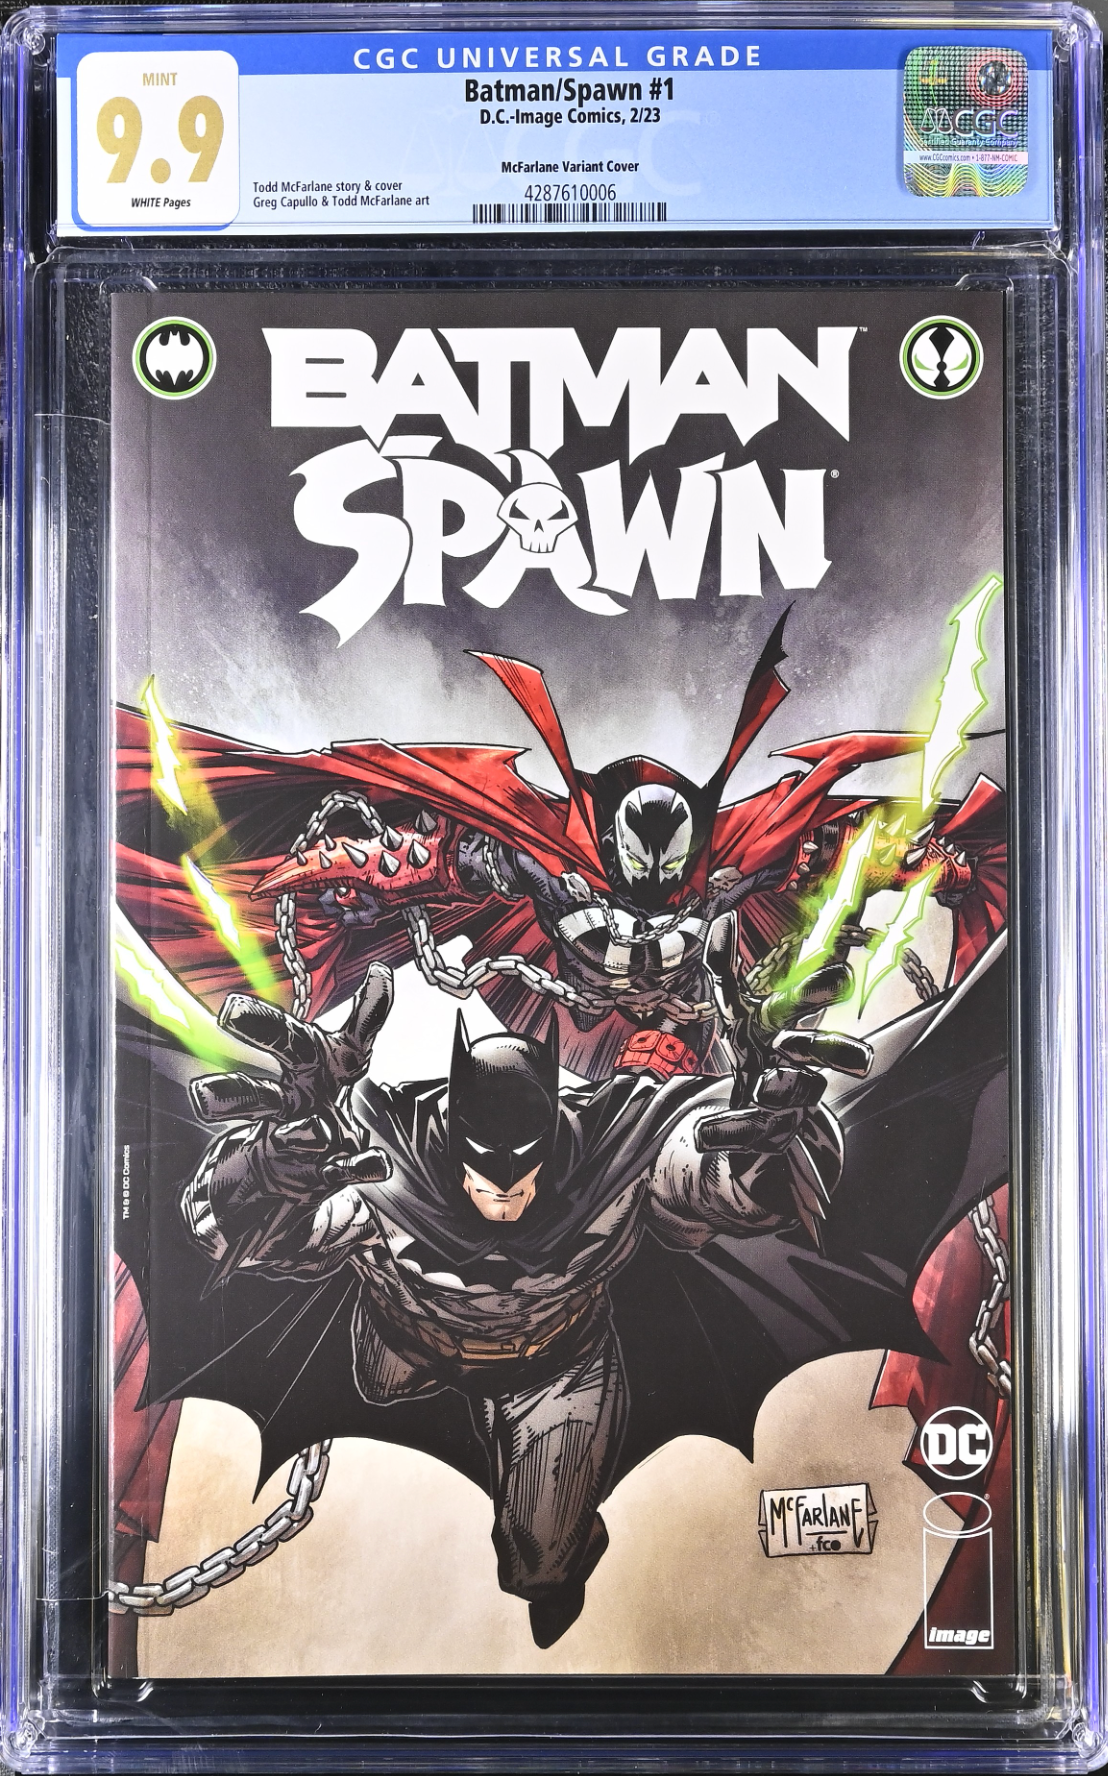 Batman Spawn #1 Cover T- McFarlane CGC 9.9